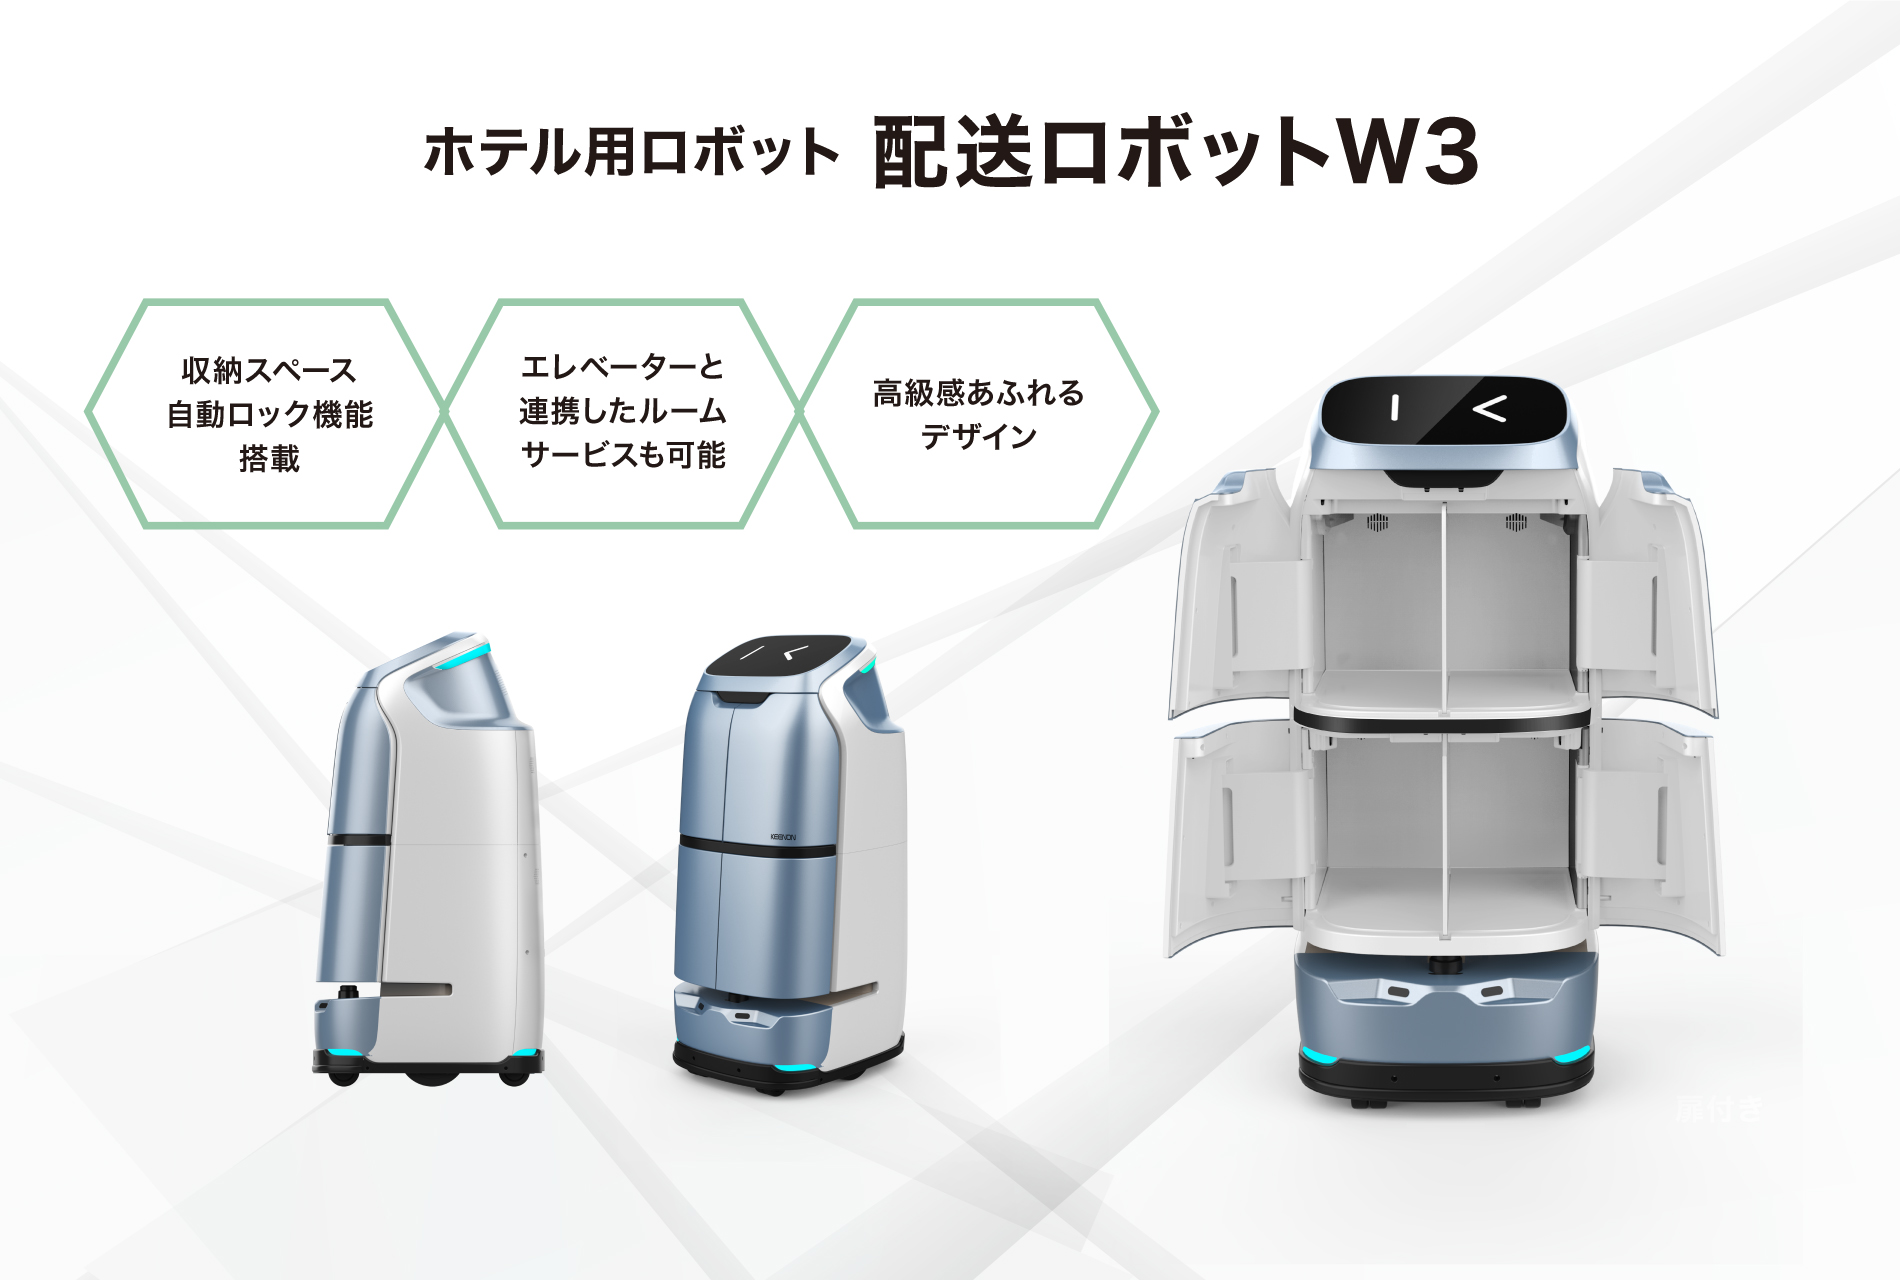 ホテル用ロボット「配送ロボットW3」